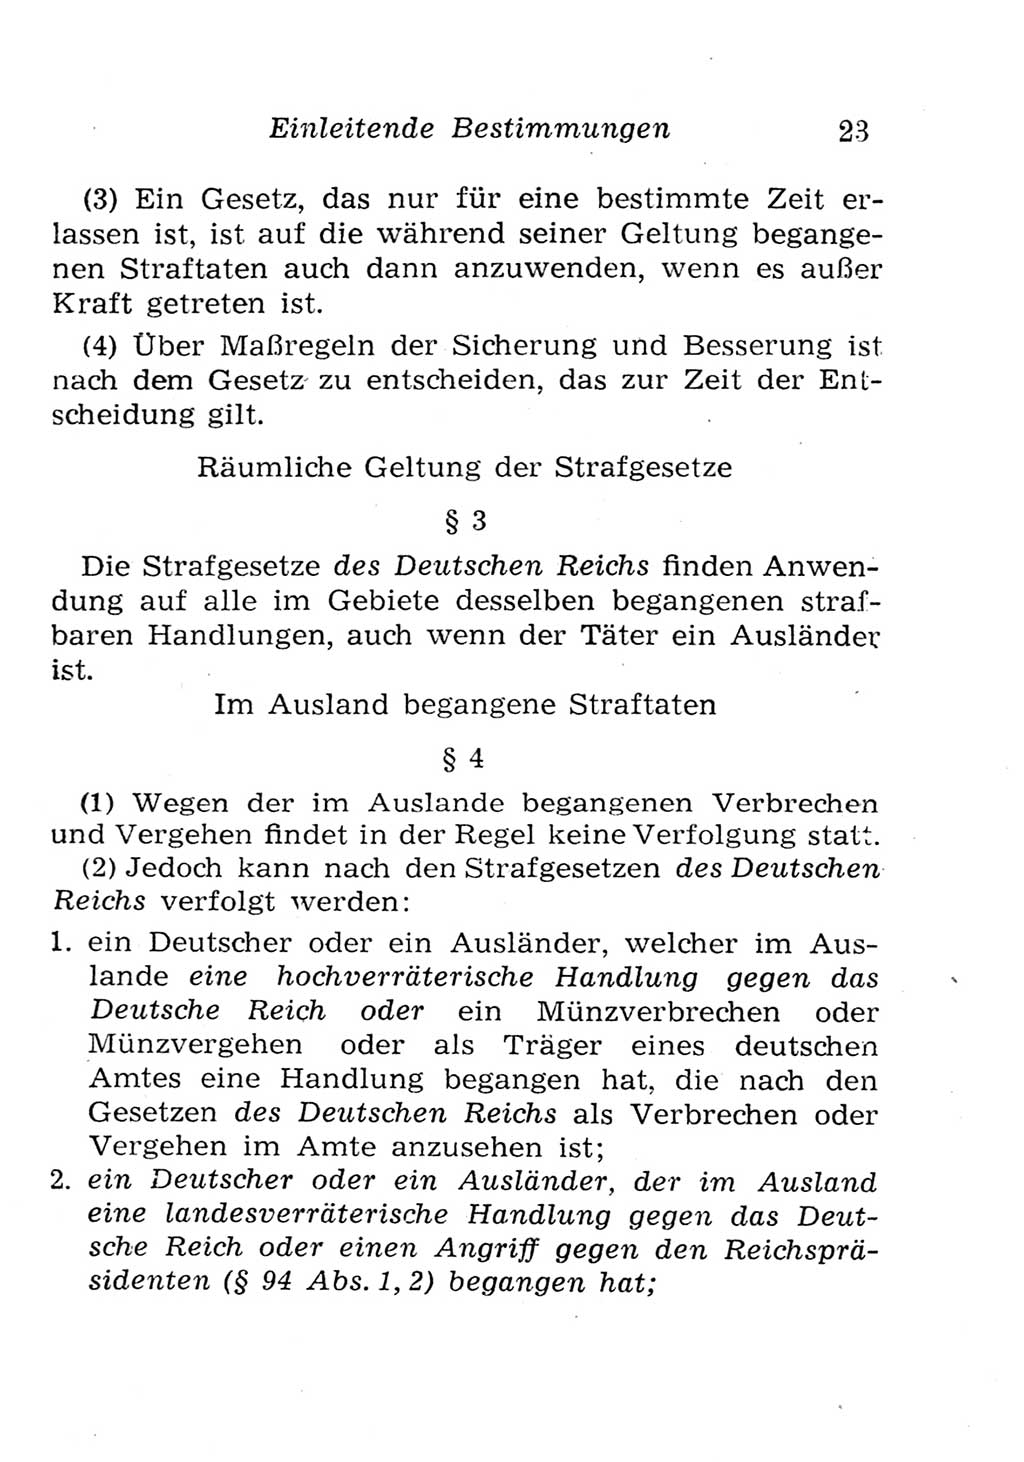 Strafgesetzbuch (StGB) und andere Strafgesetze [Deutsche Demokratische Republik (DDR)] 1957, Seite 23 (StGB Strafges. DDR 1957, S. 23)